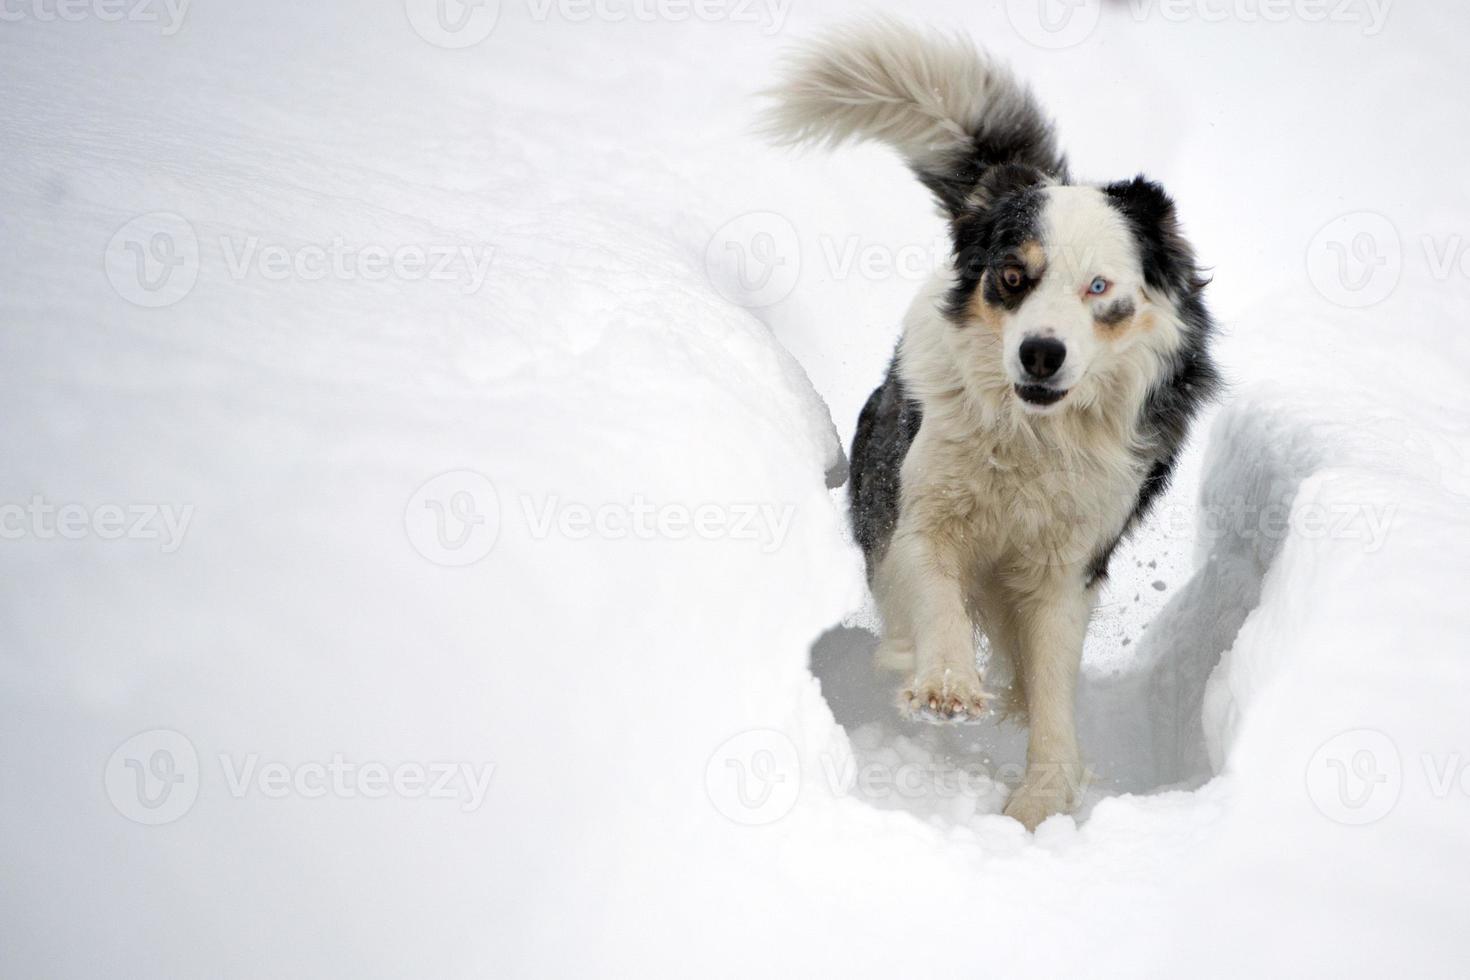 azul ojos perro corriendo en el nieve foto